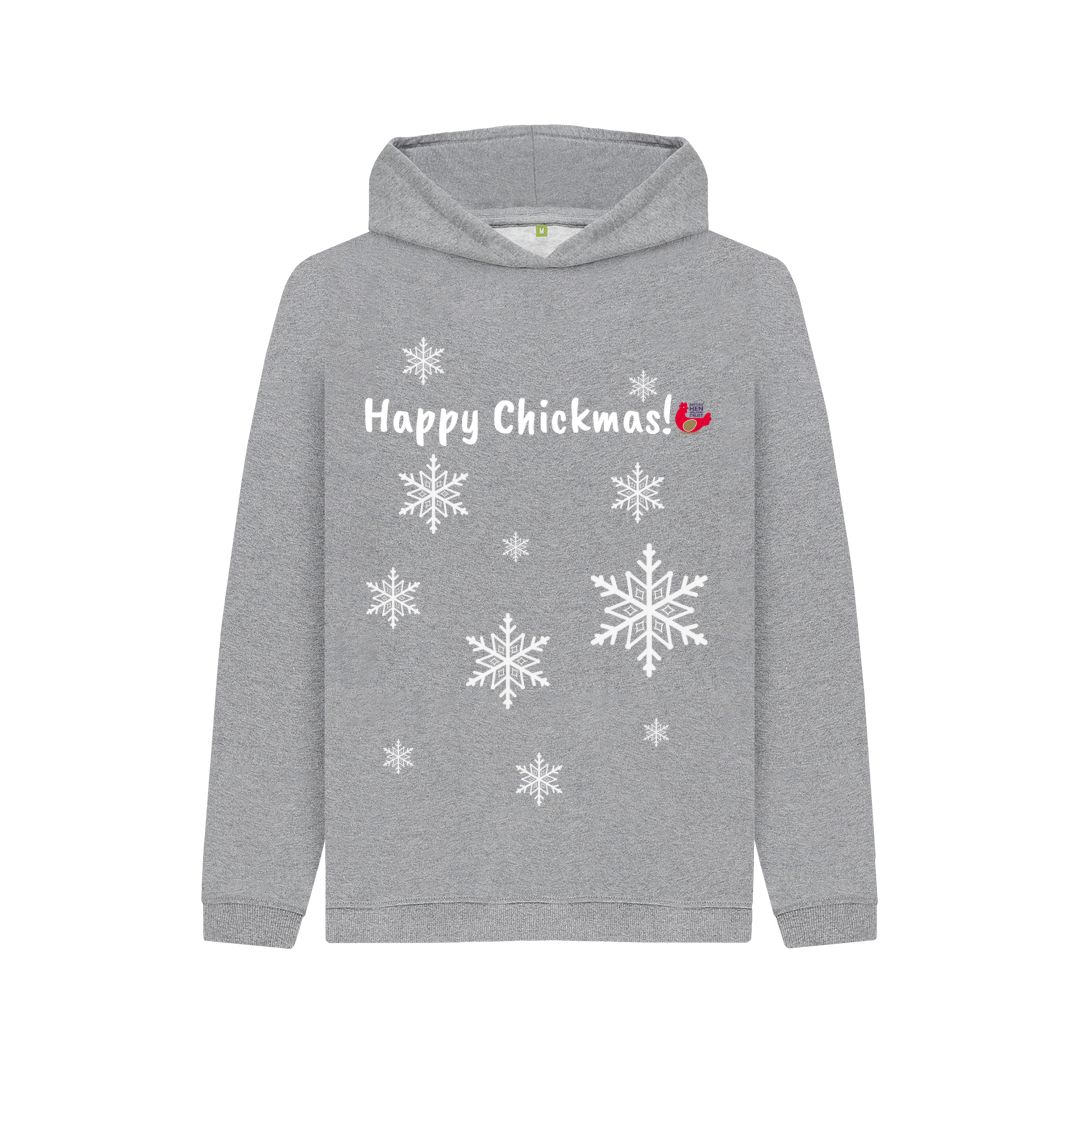 Athletic Grey Kids Unisex Hoodie - Happy Chickmas! Snowflake